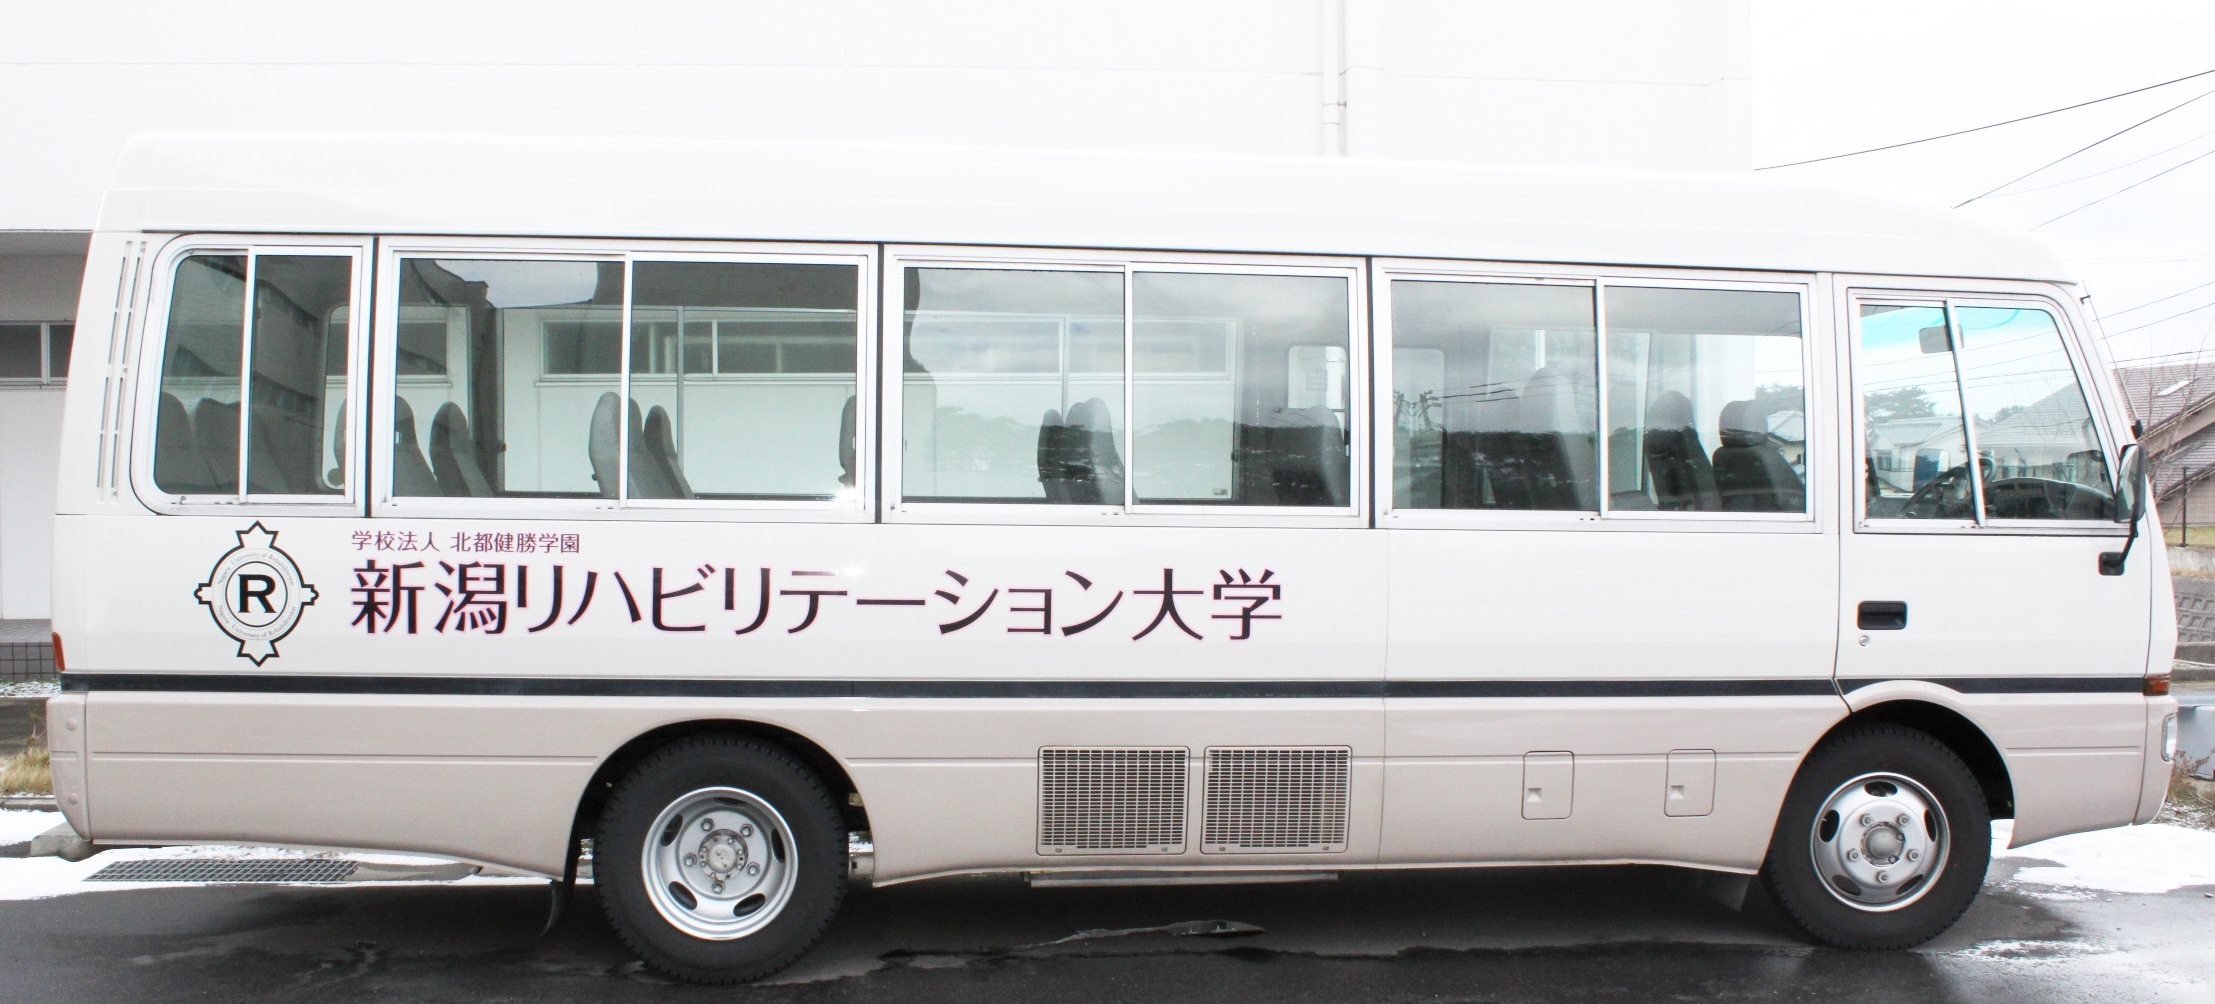 新潟リハビリテーション大学バス.JPG